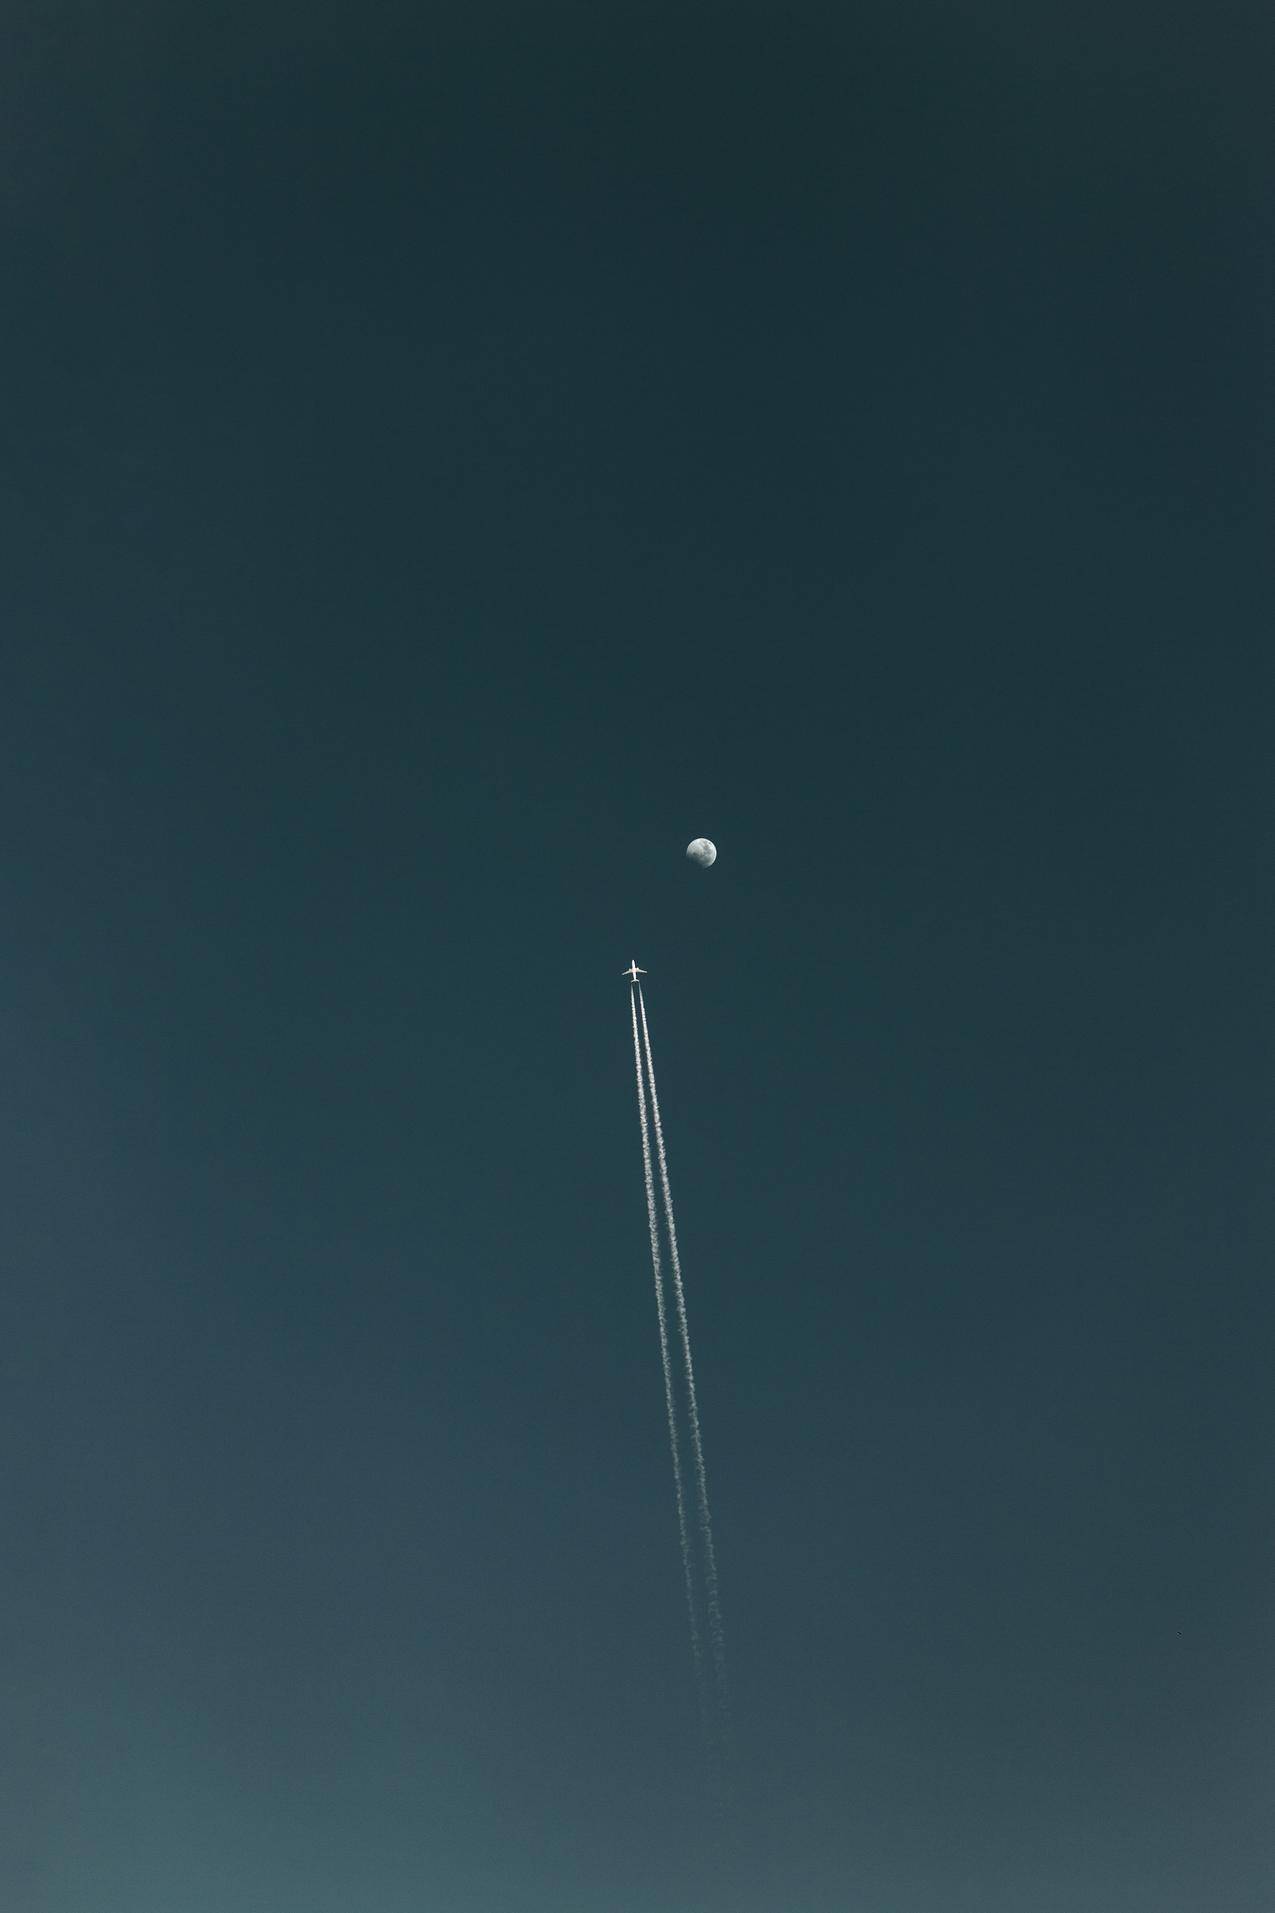 天空,飞机,clearsky,月亮,车辆,凝结,飞机